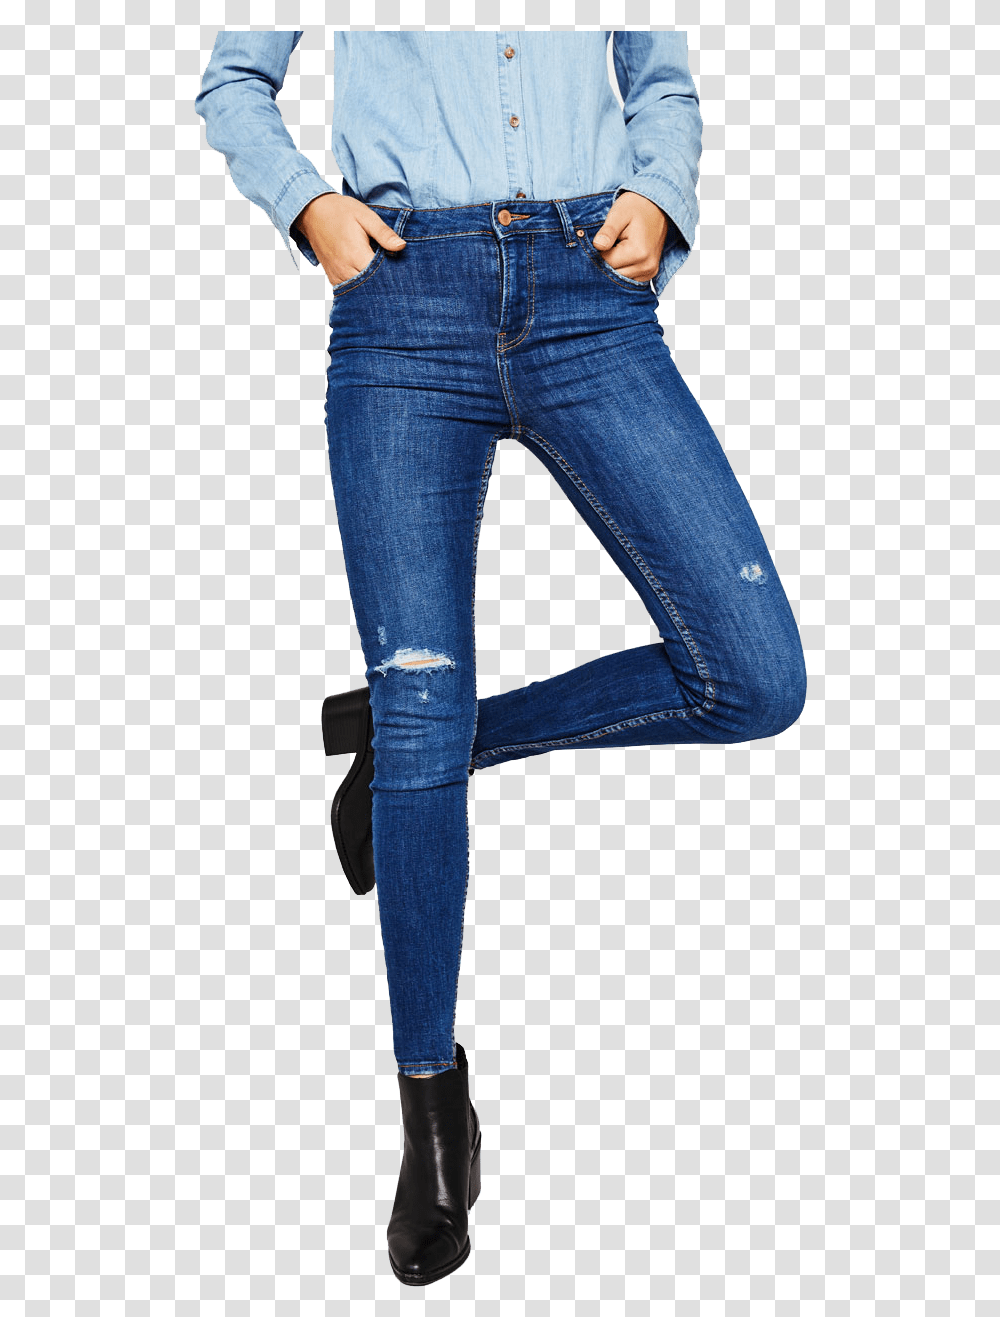 Jeans Hd Images Jeans Hd, Pants, Apparel, Denim Transparent Png